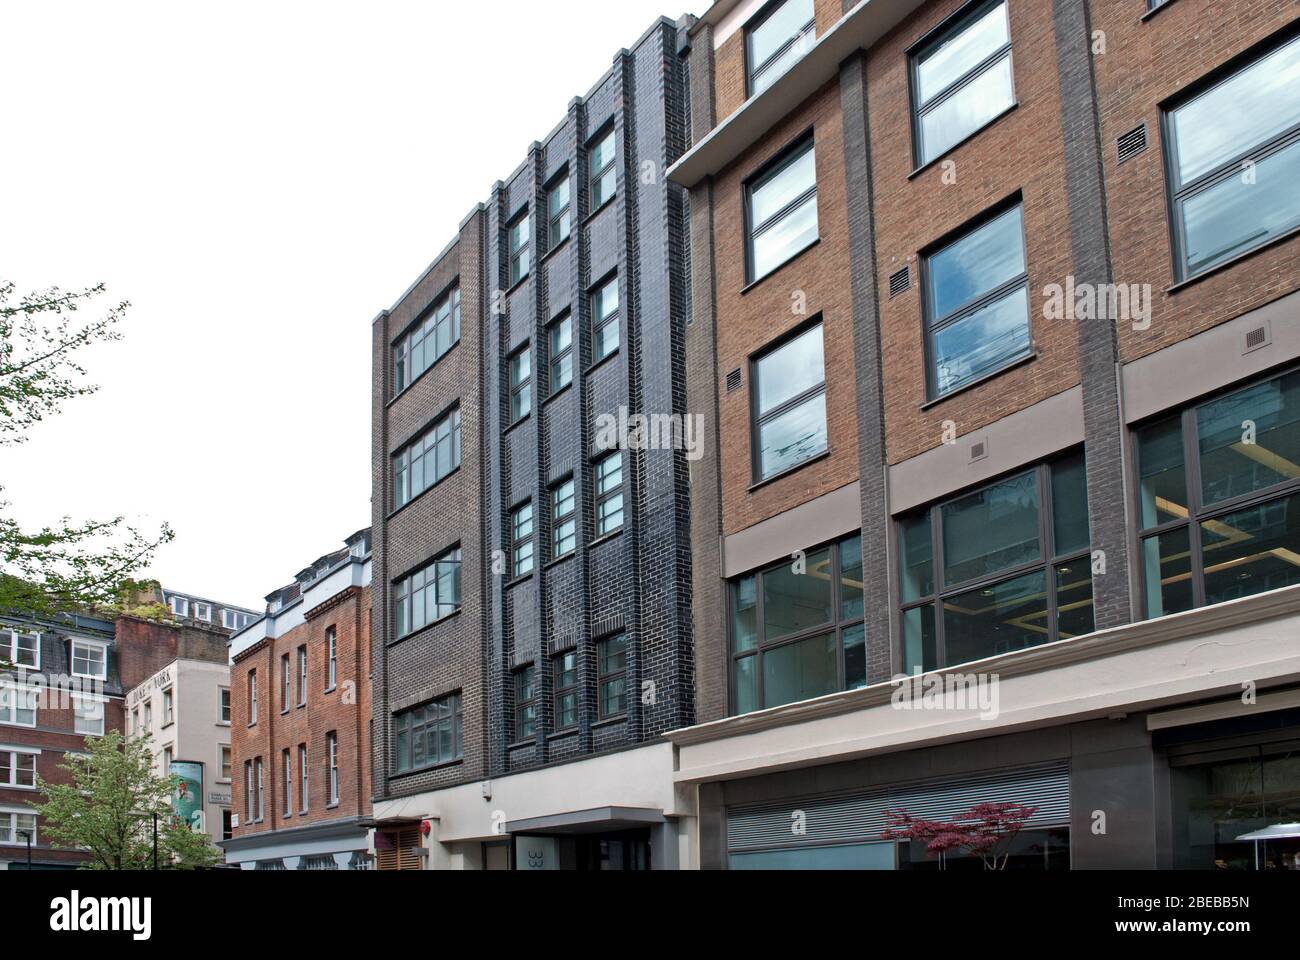 33 Charlotte Street, Fitzrovia, London W1T Stockfoto